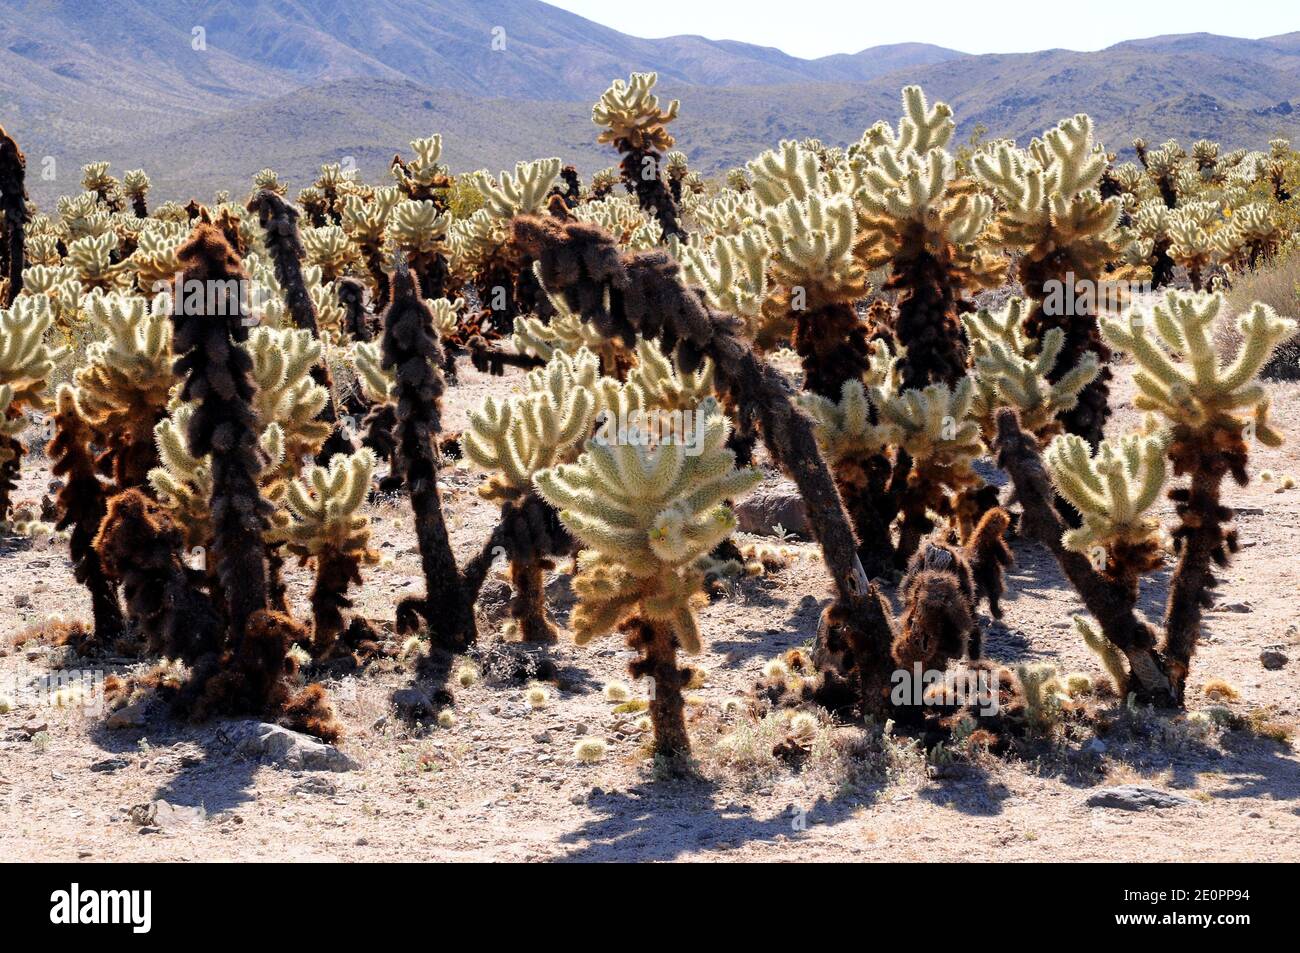 La cholla de oso de peluche (Cylindropuntia bigelovii u Opuntia bigelovii) es un cactus de cholla nativo del sudoeste de EE.UU. Y noroeste de México. Esta foto Foto de stock